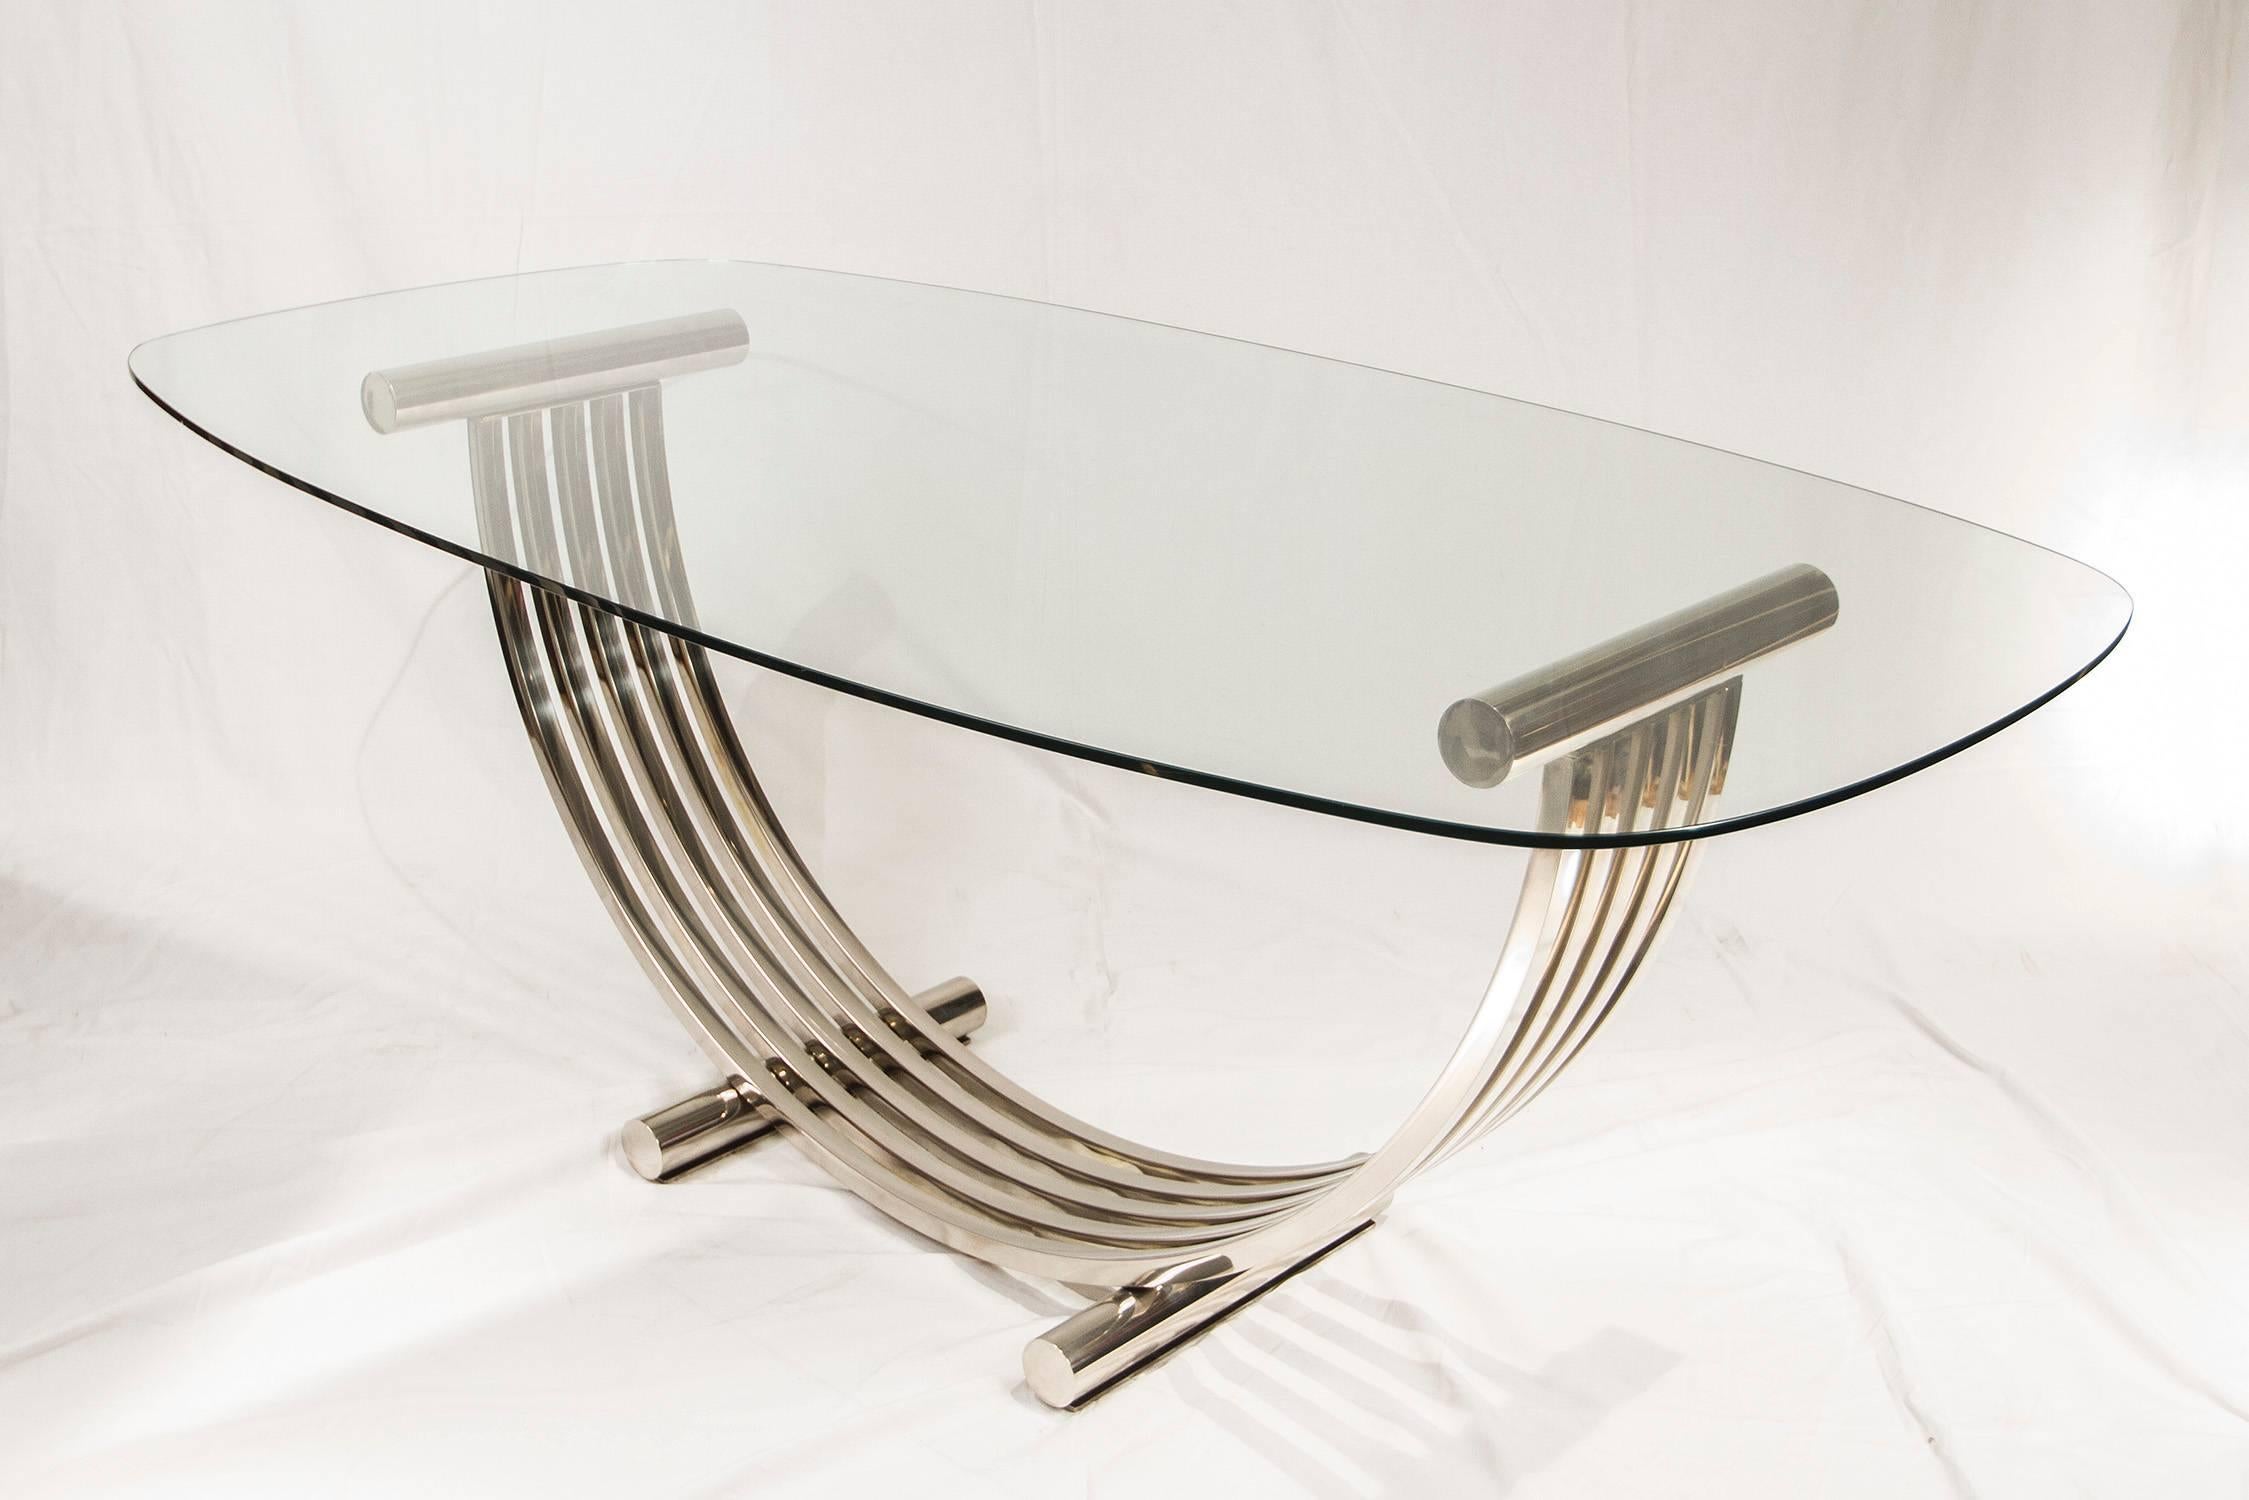 European Oval Chrome Dining Table